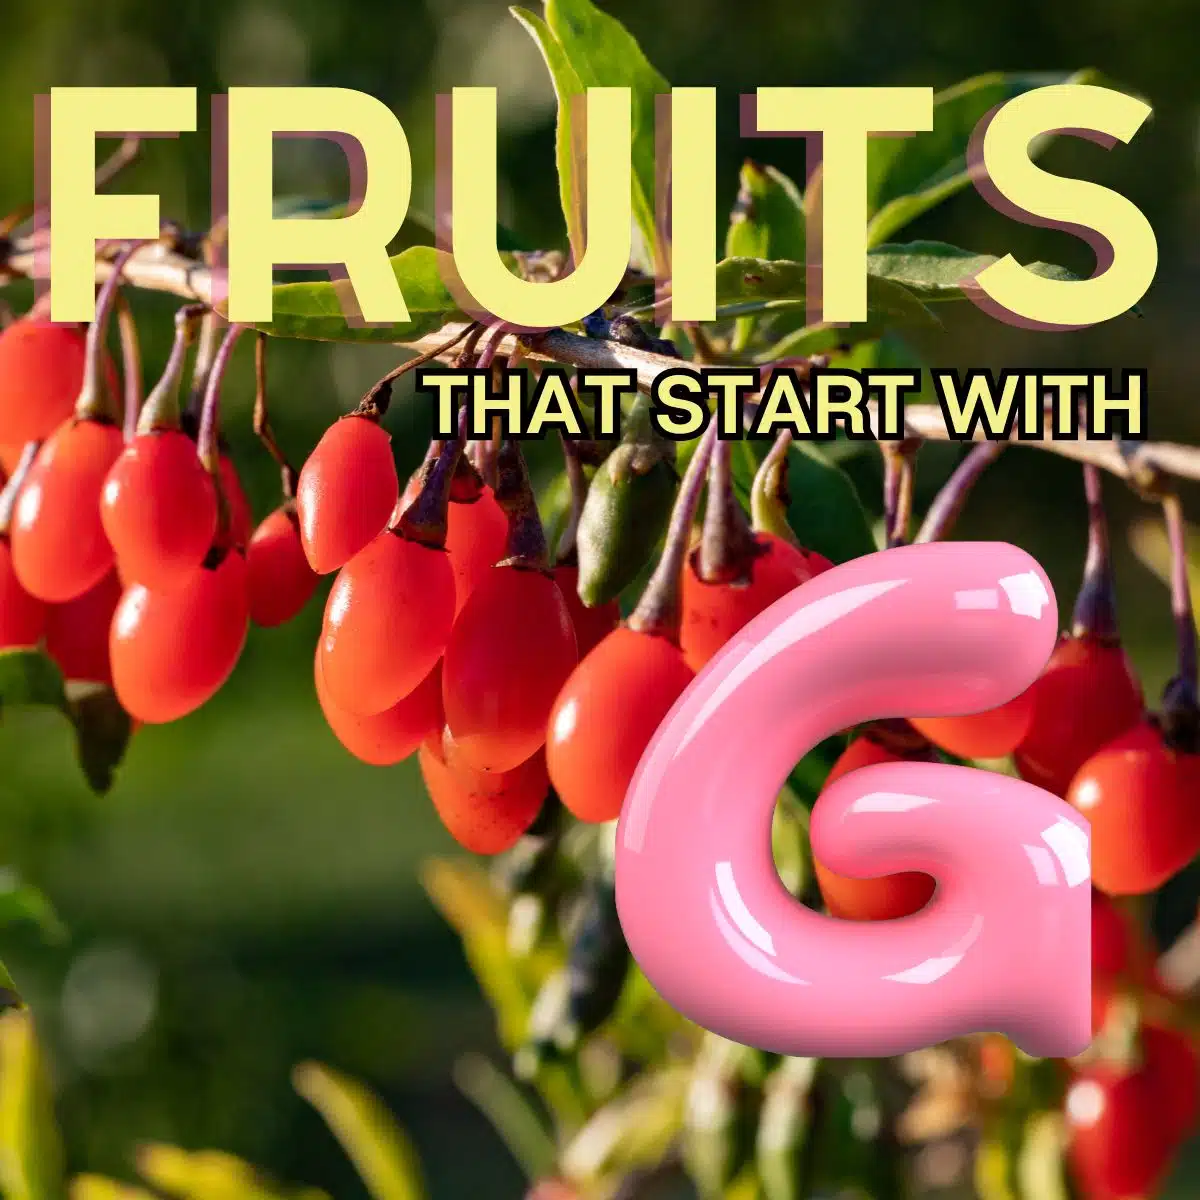 Čtvercový obrázek pro ovoce, které začíná písmenem G.